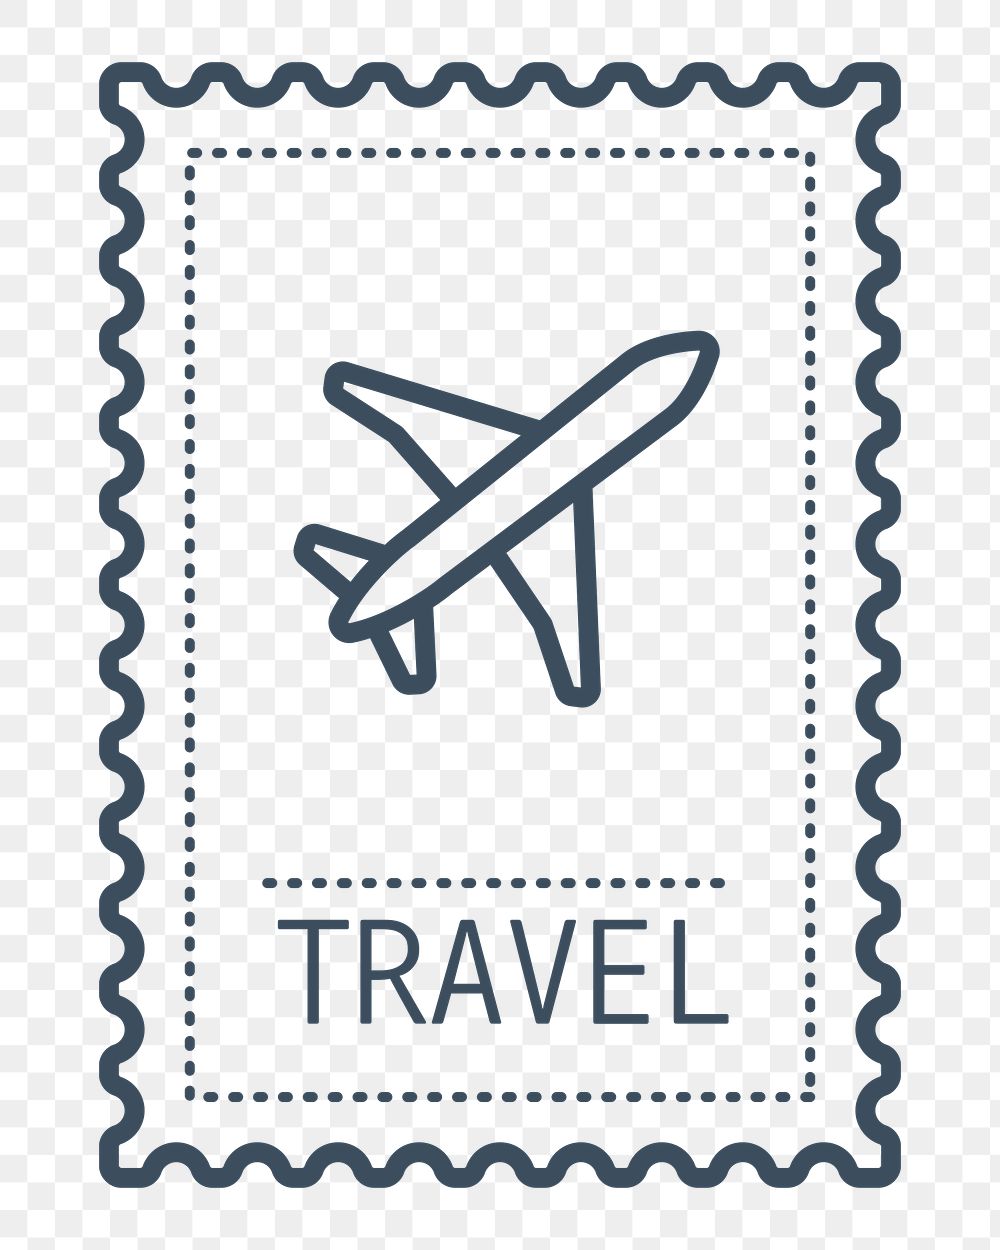 PNG plane outline postage stamp, transparent background